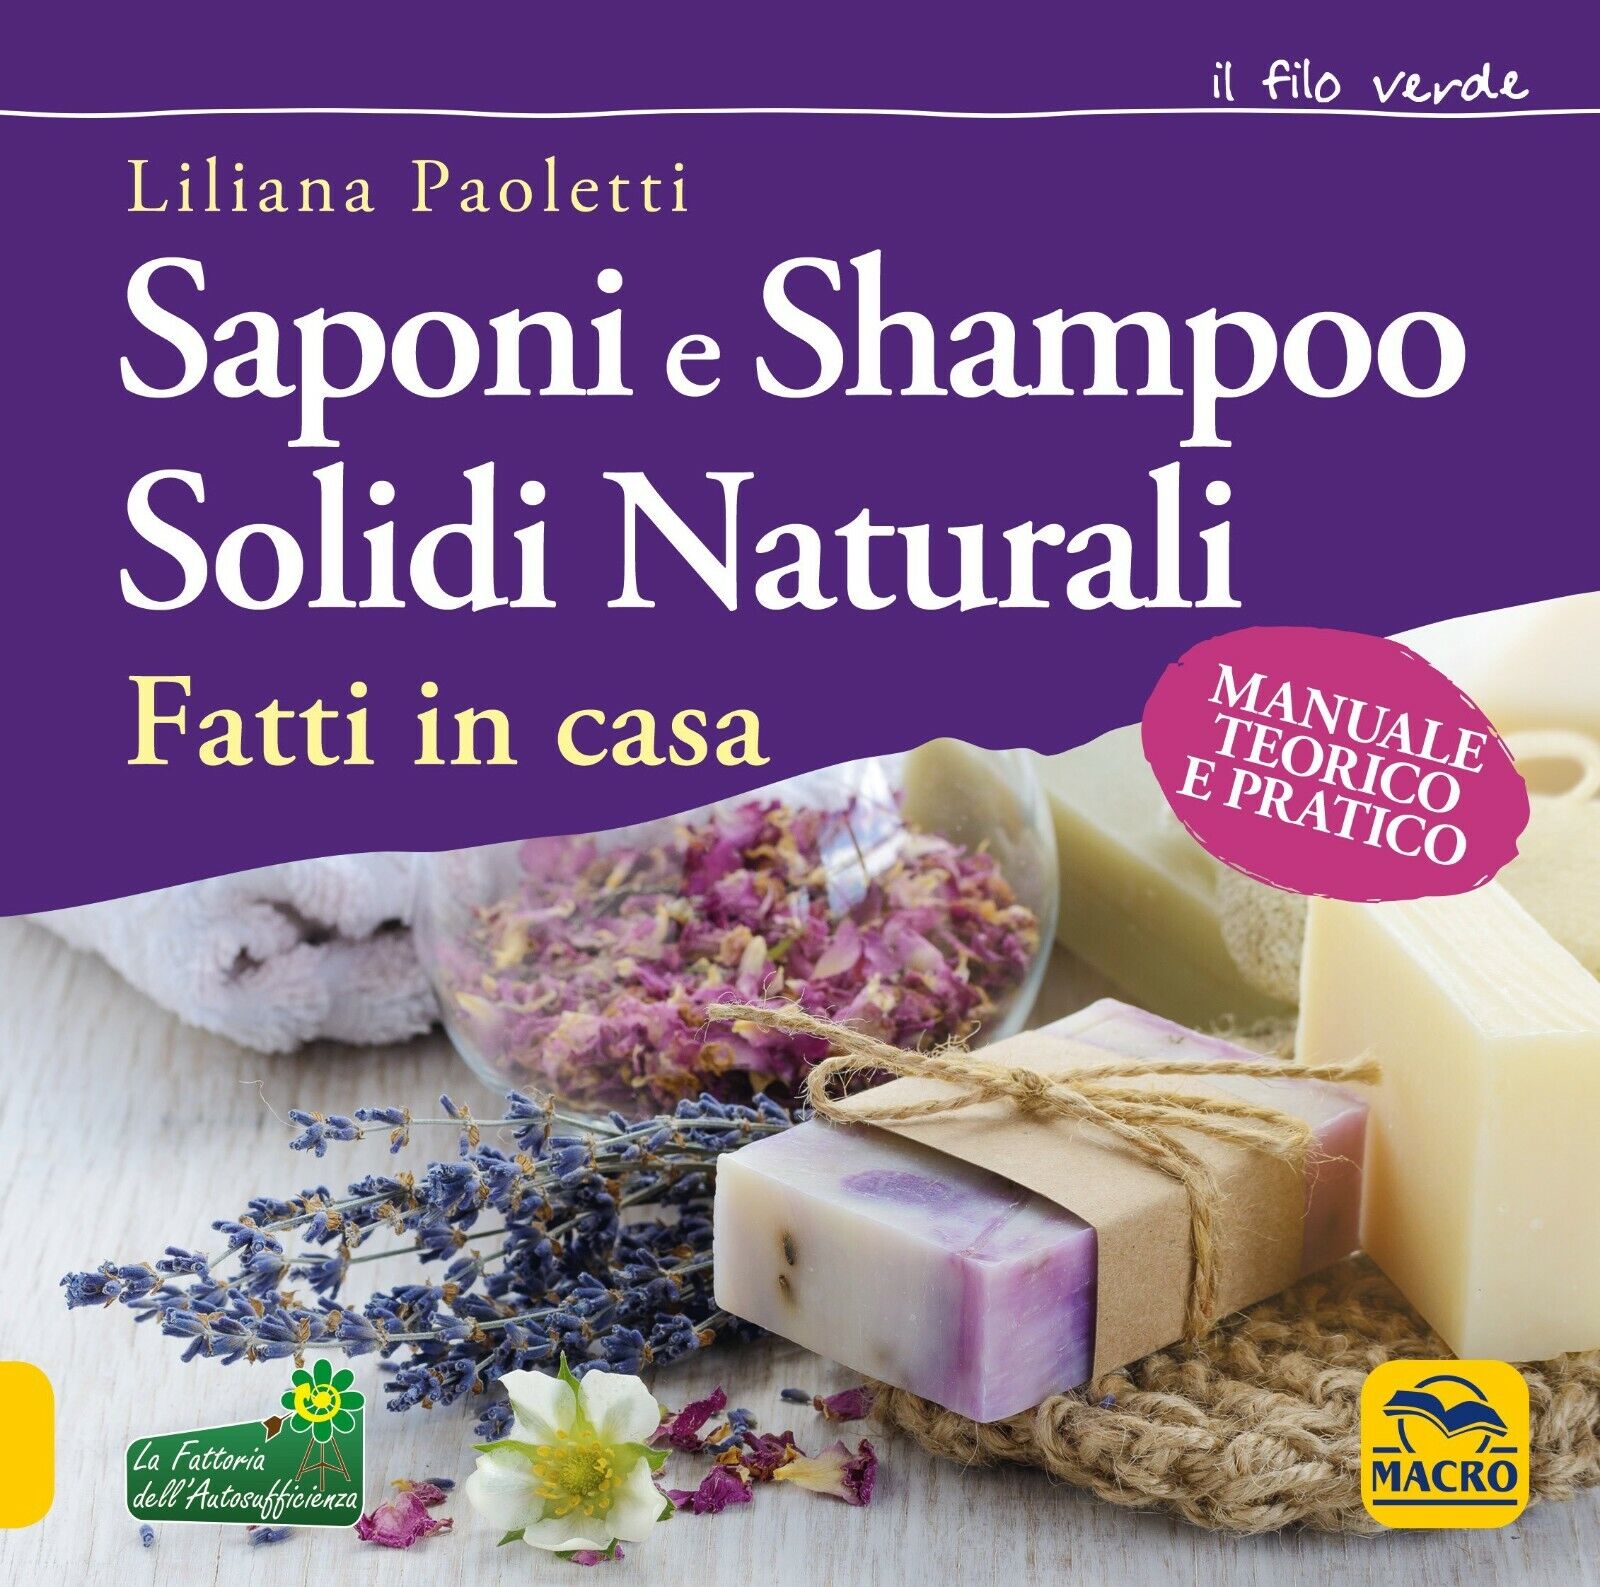 Saponi e shampoo solidi, naturali, fatti in casa. Manuale teorico e pratico di L